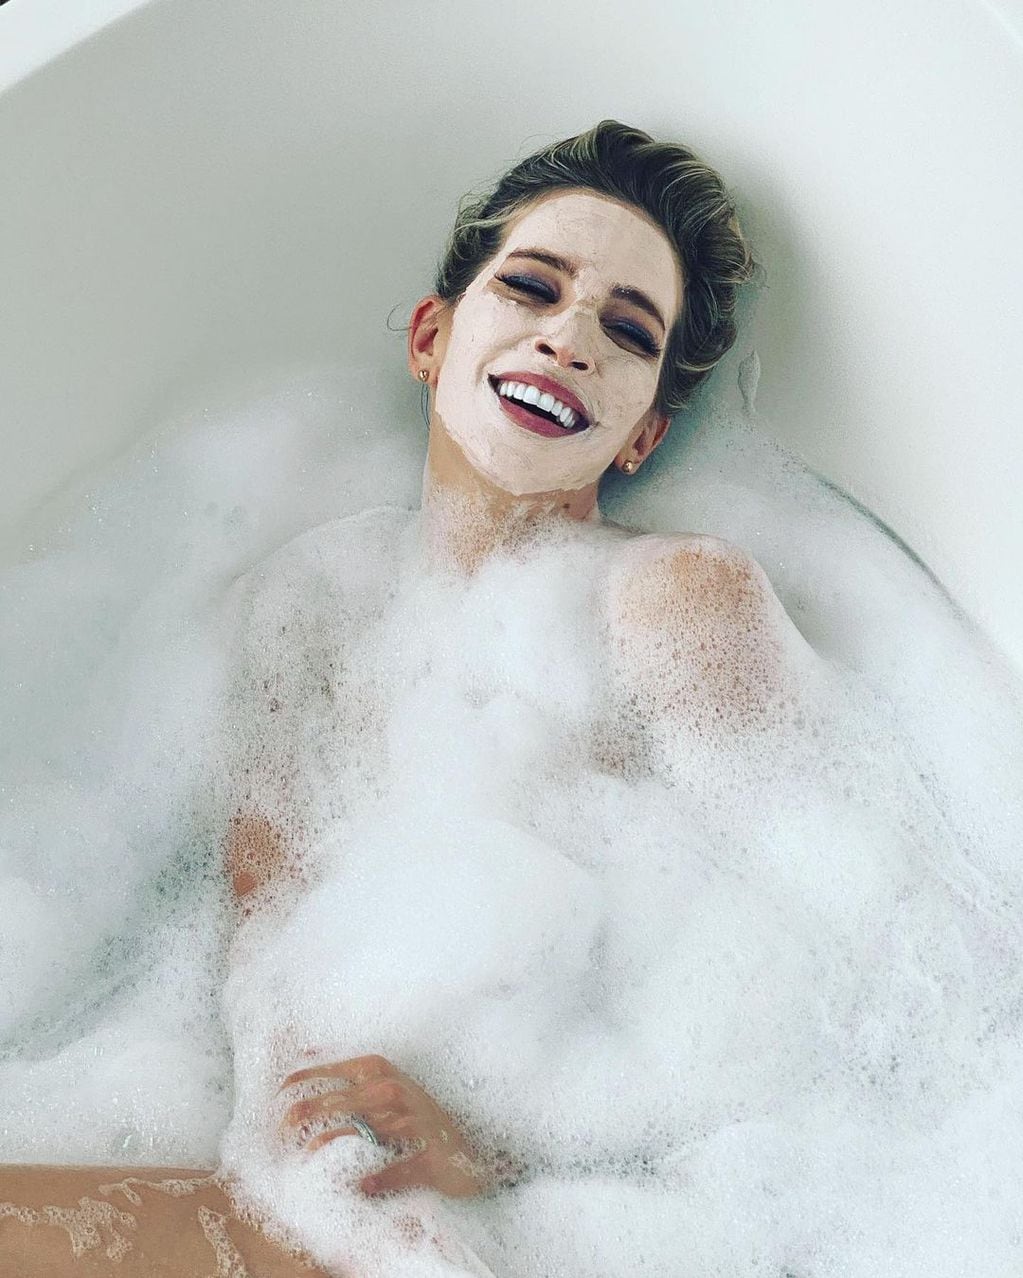 Luisana Lopilato y una sensual sesión de fotos en la bañera.